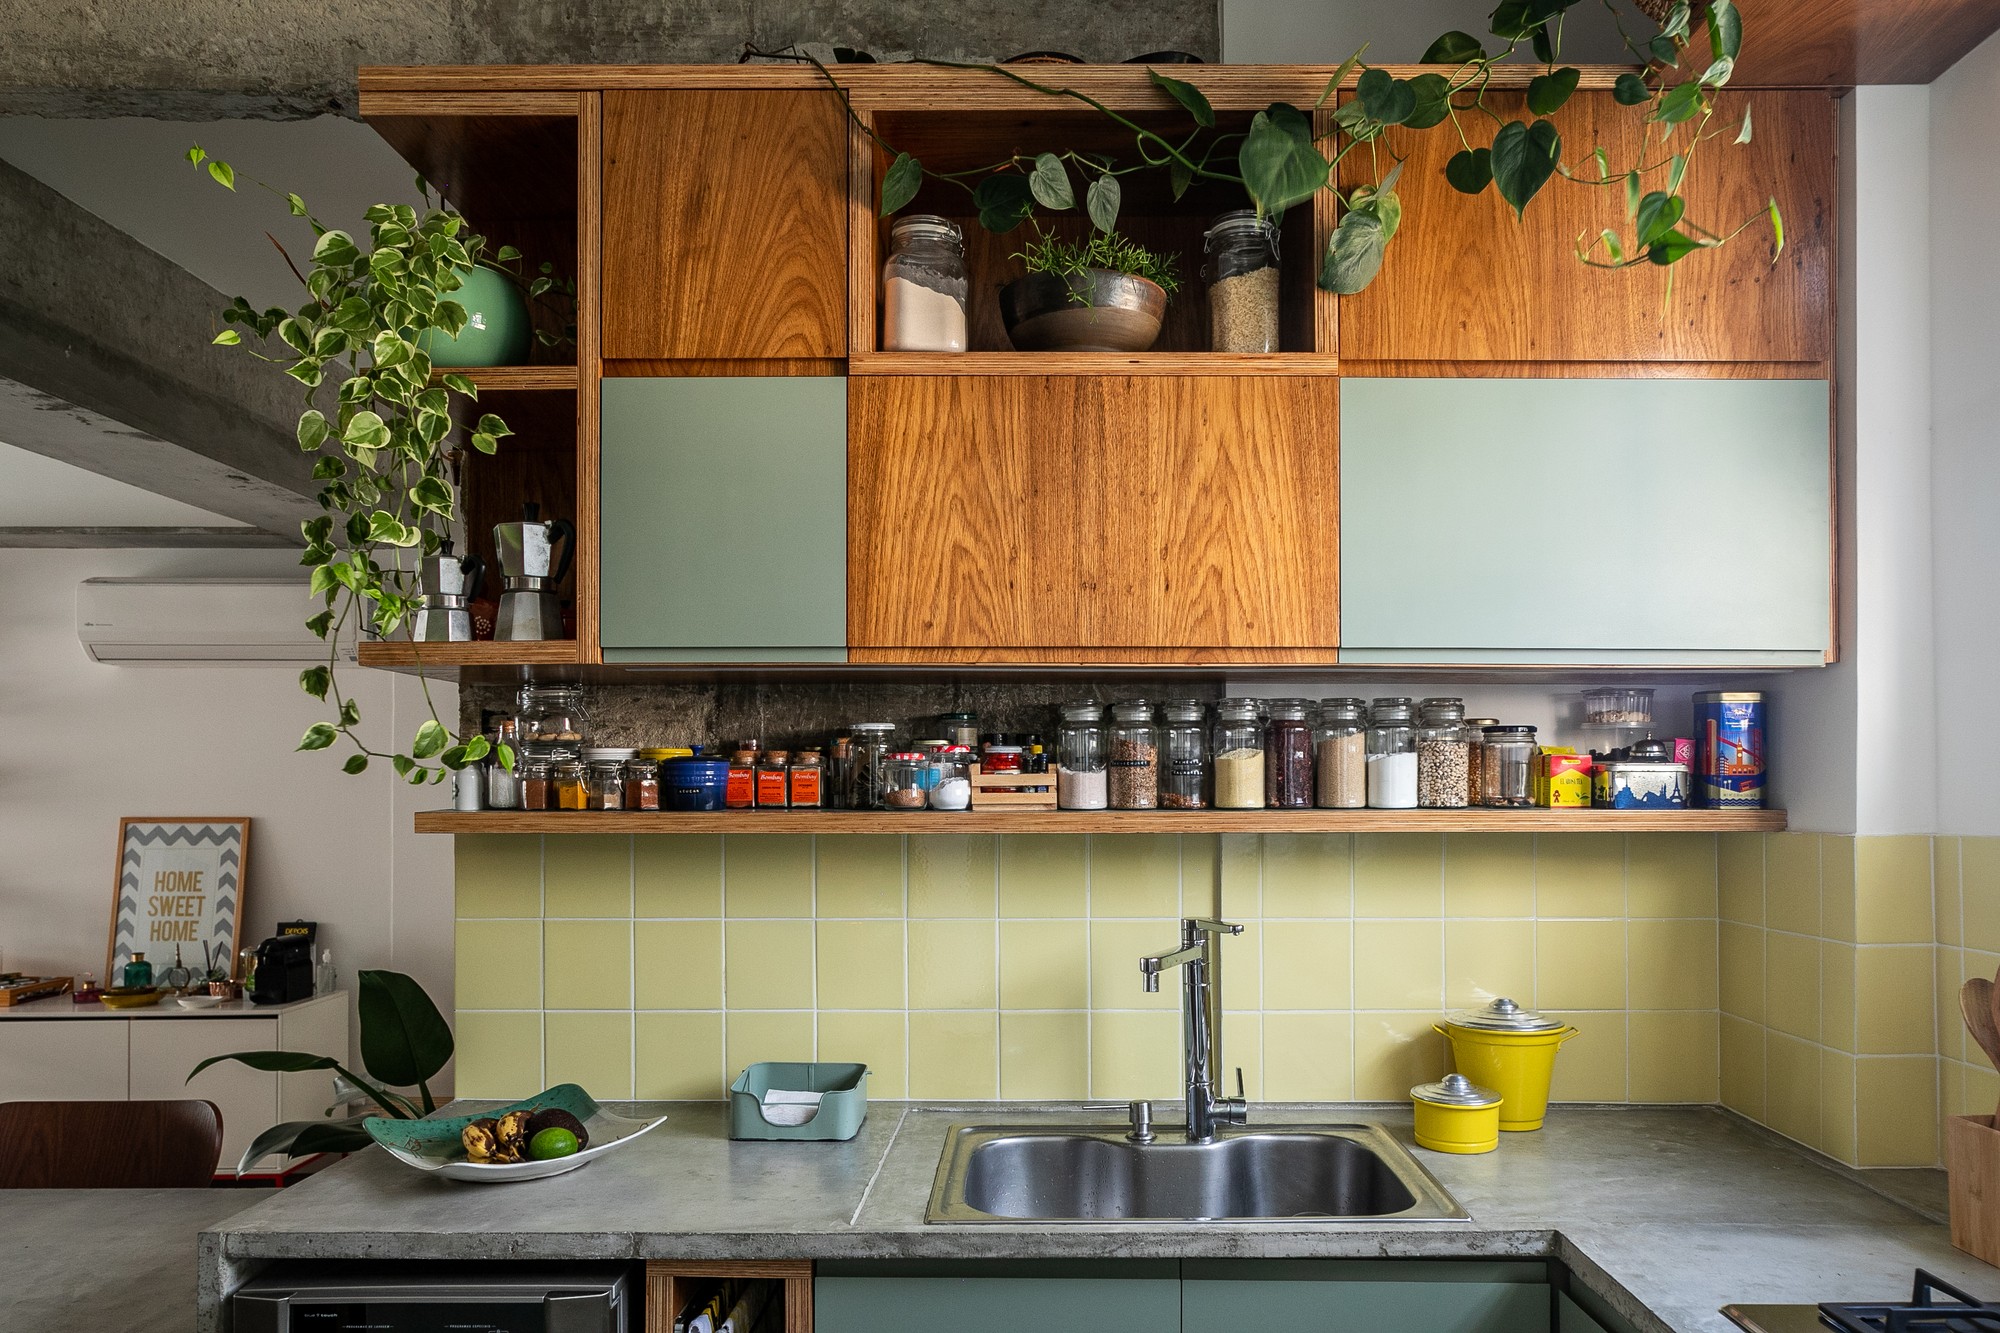 Décor do dia: cozinha pequena com armários planejados e plantas (Foto: Divulgação)